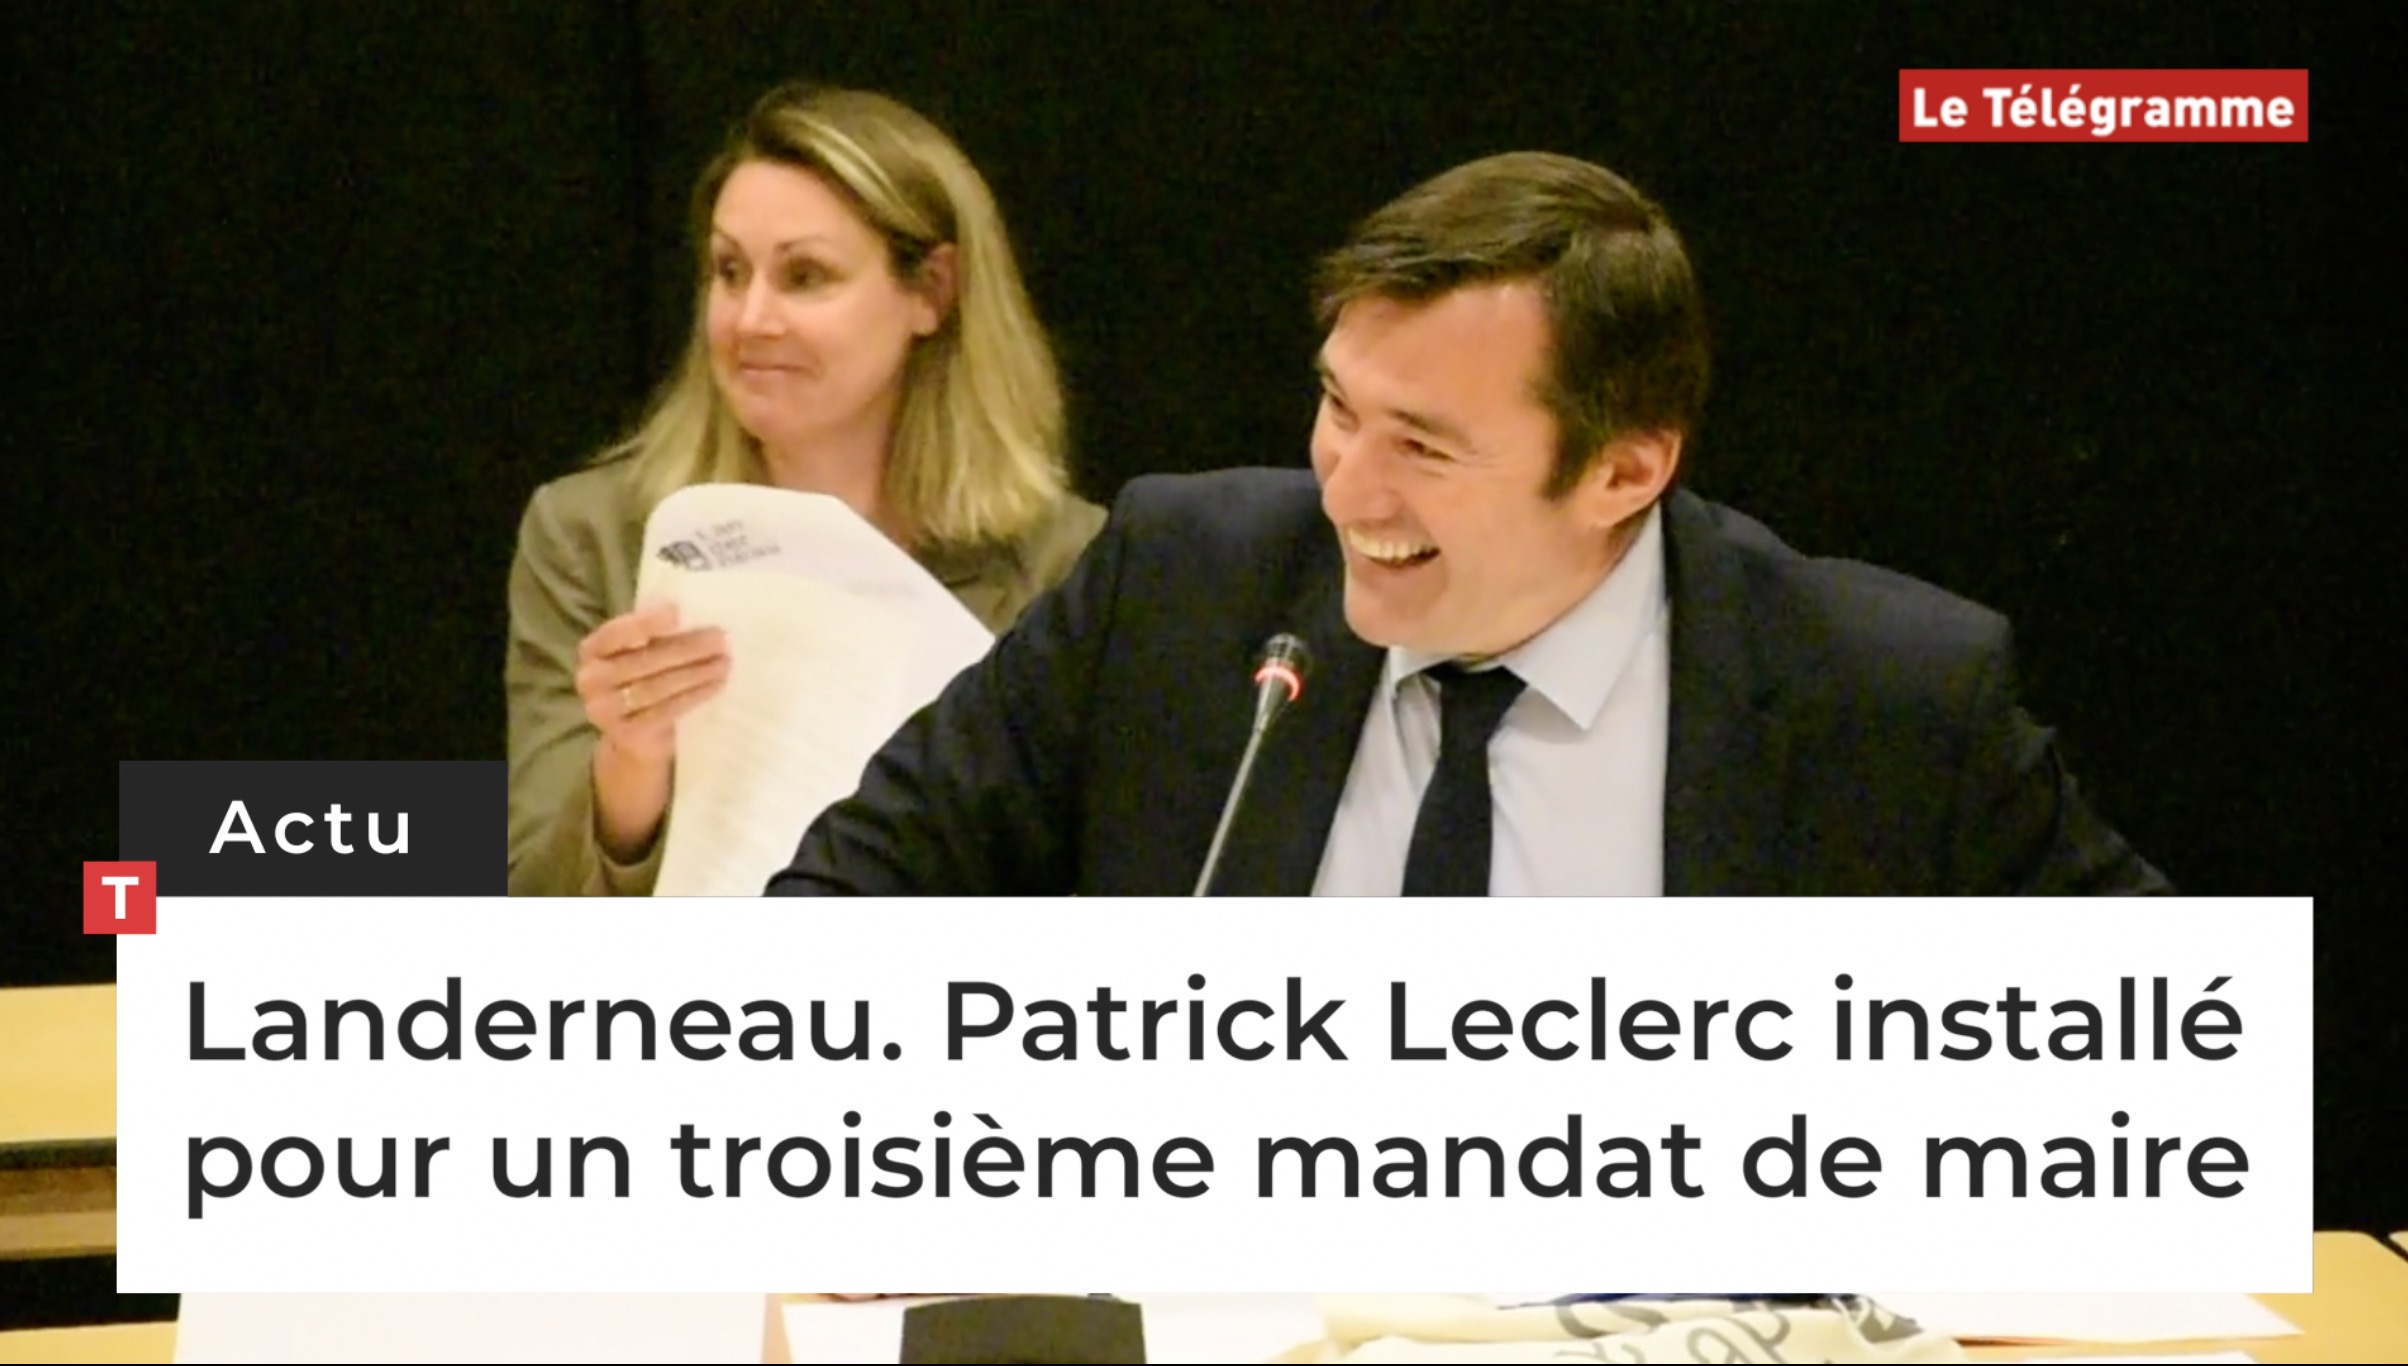 Landerneau. Patrick Leclerc installé pour un troisième mandat de maire (Le Télégramme)